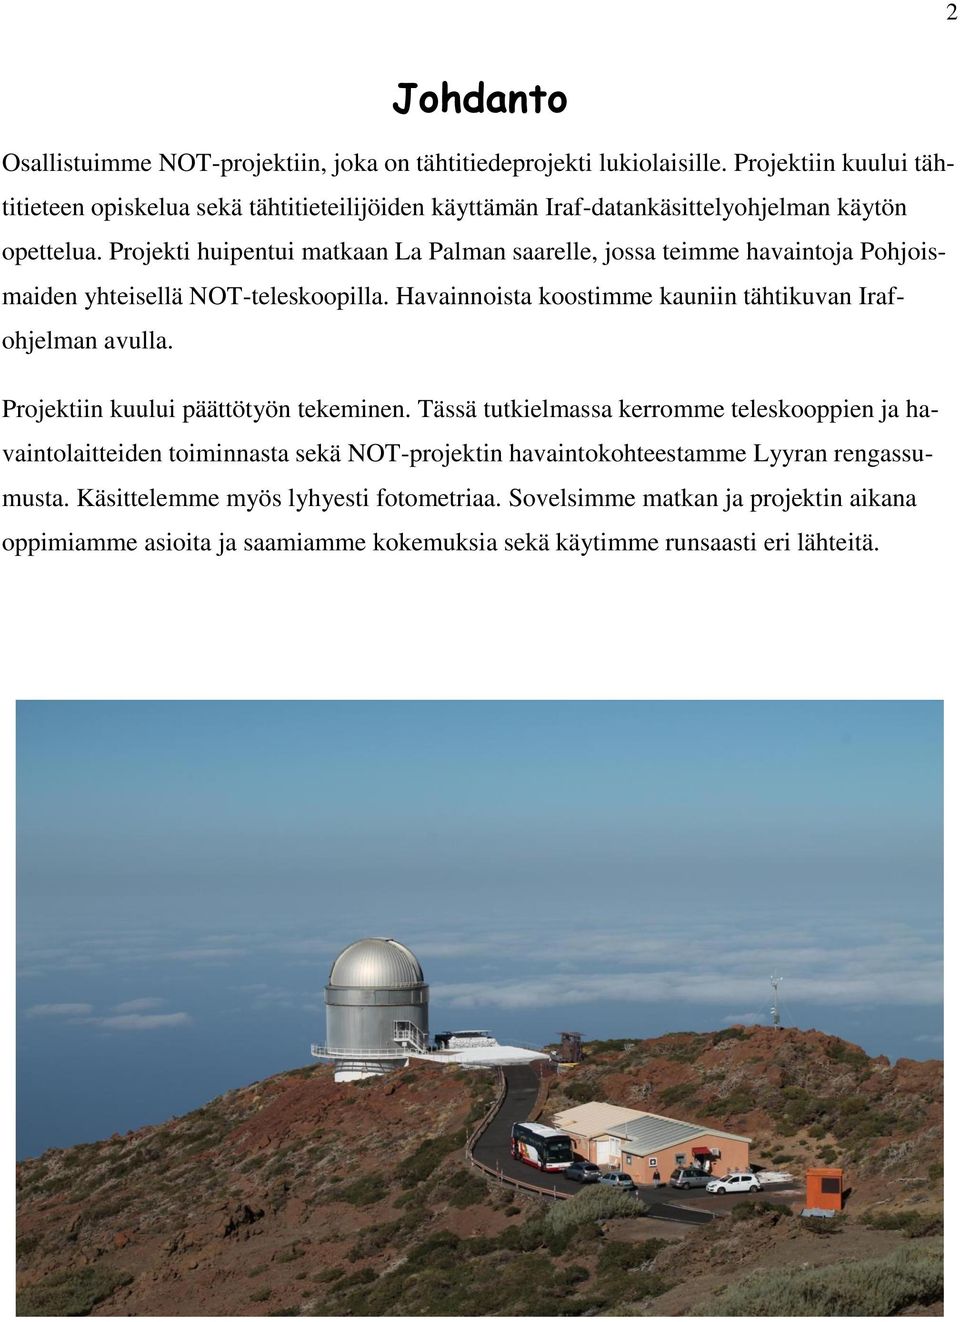 Projekti huipentui matkaan La Palman saarelle, jossa teimme havaintoja Pohjoismaiden yhteisellä NOT-teleskoopilla. Havainnoista koostimme kauniin tähtikuvan Irafohjelman avulla.